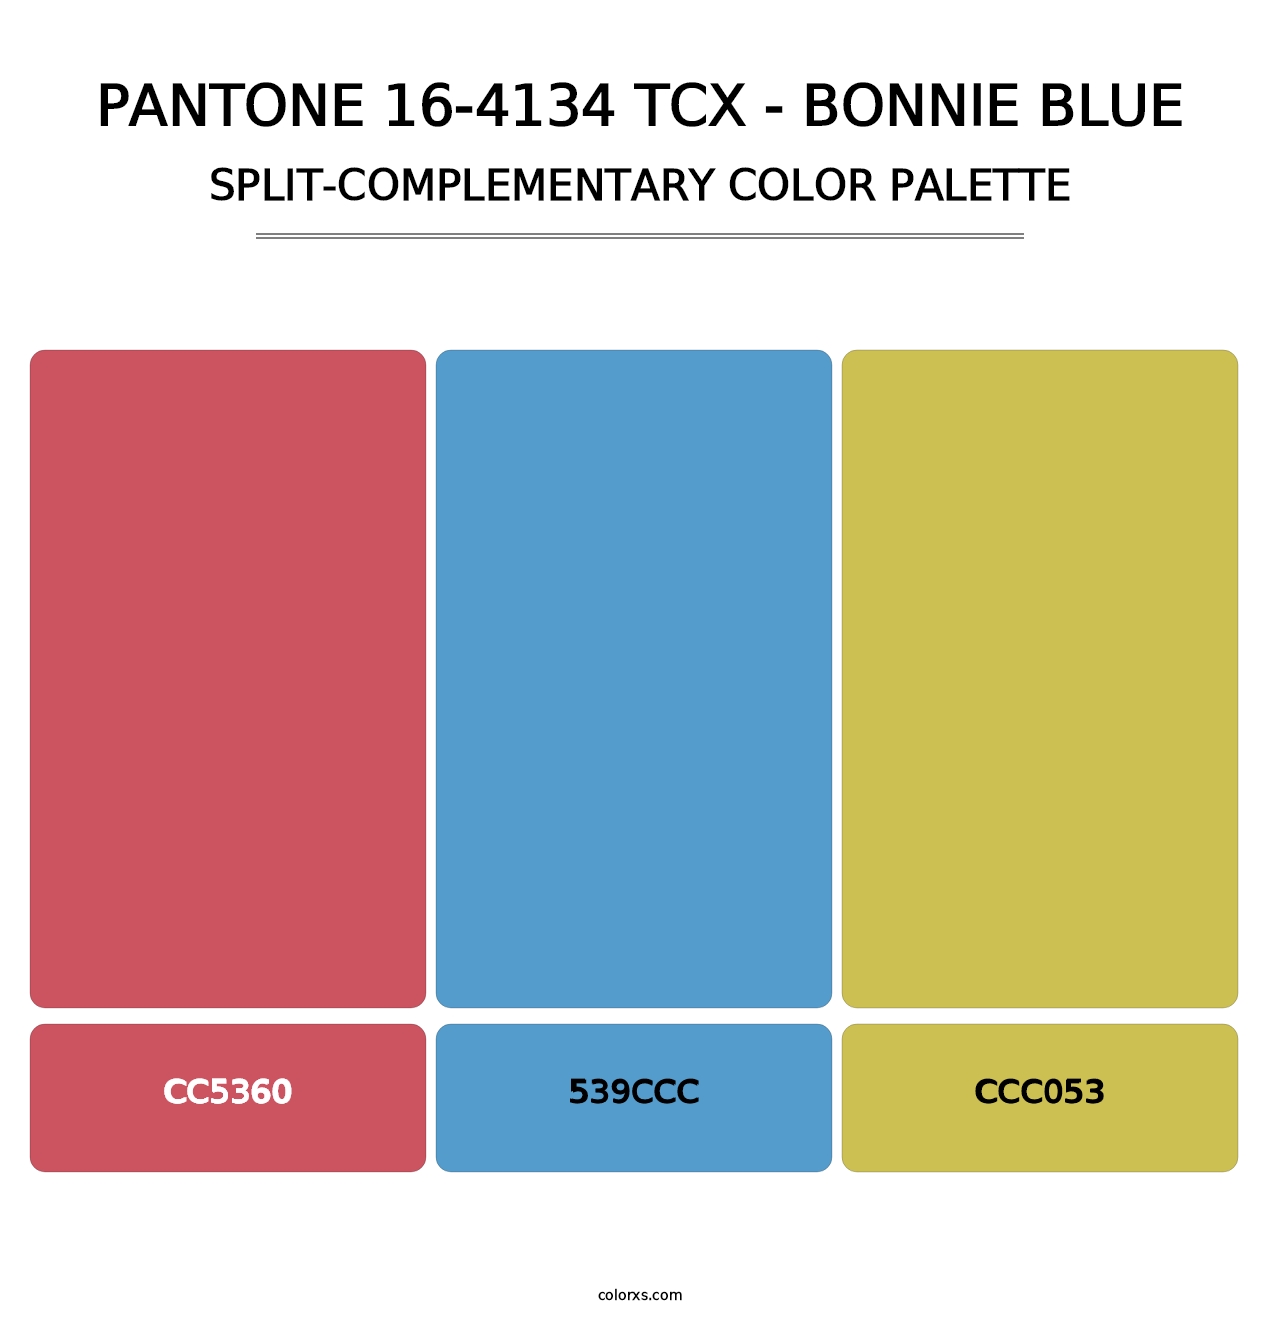 PANTONE 16-4134 TCX - Bonnie Blue - Split-Complementary Color Palette